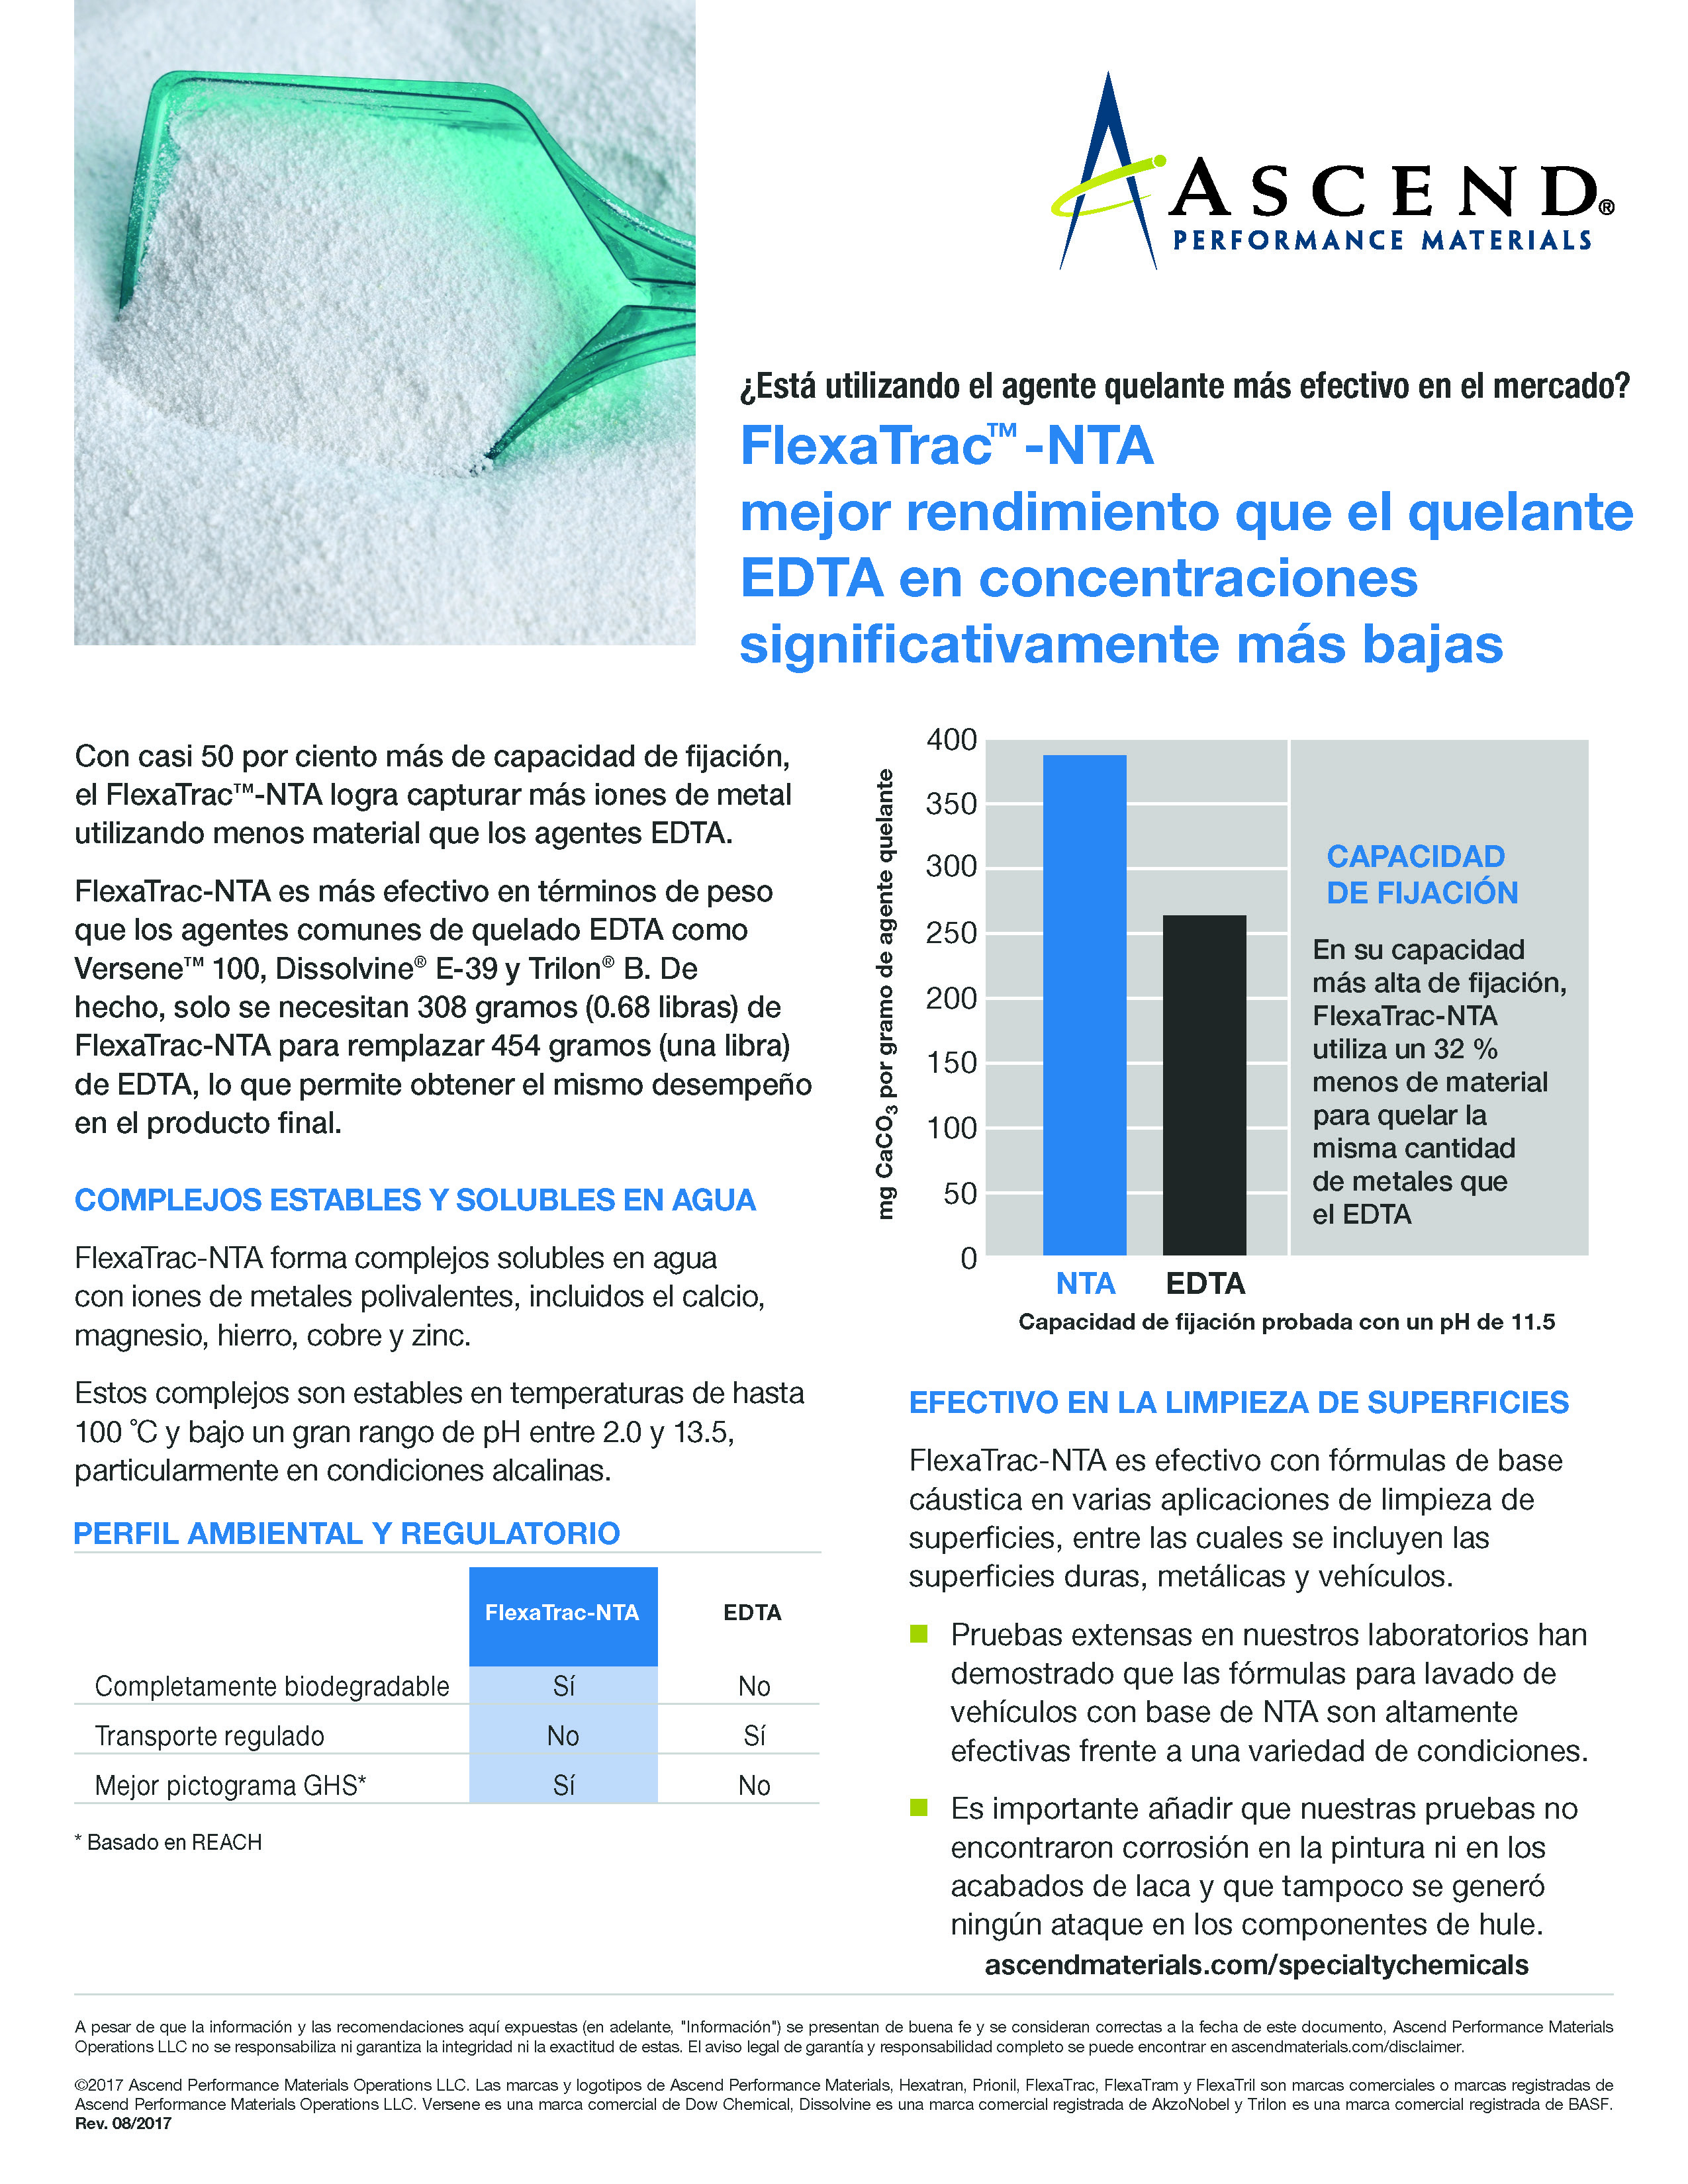 FlexaTrac®-NTA vs. EDTA